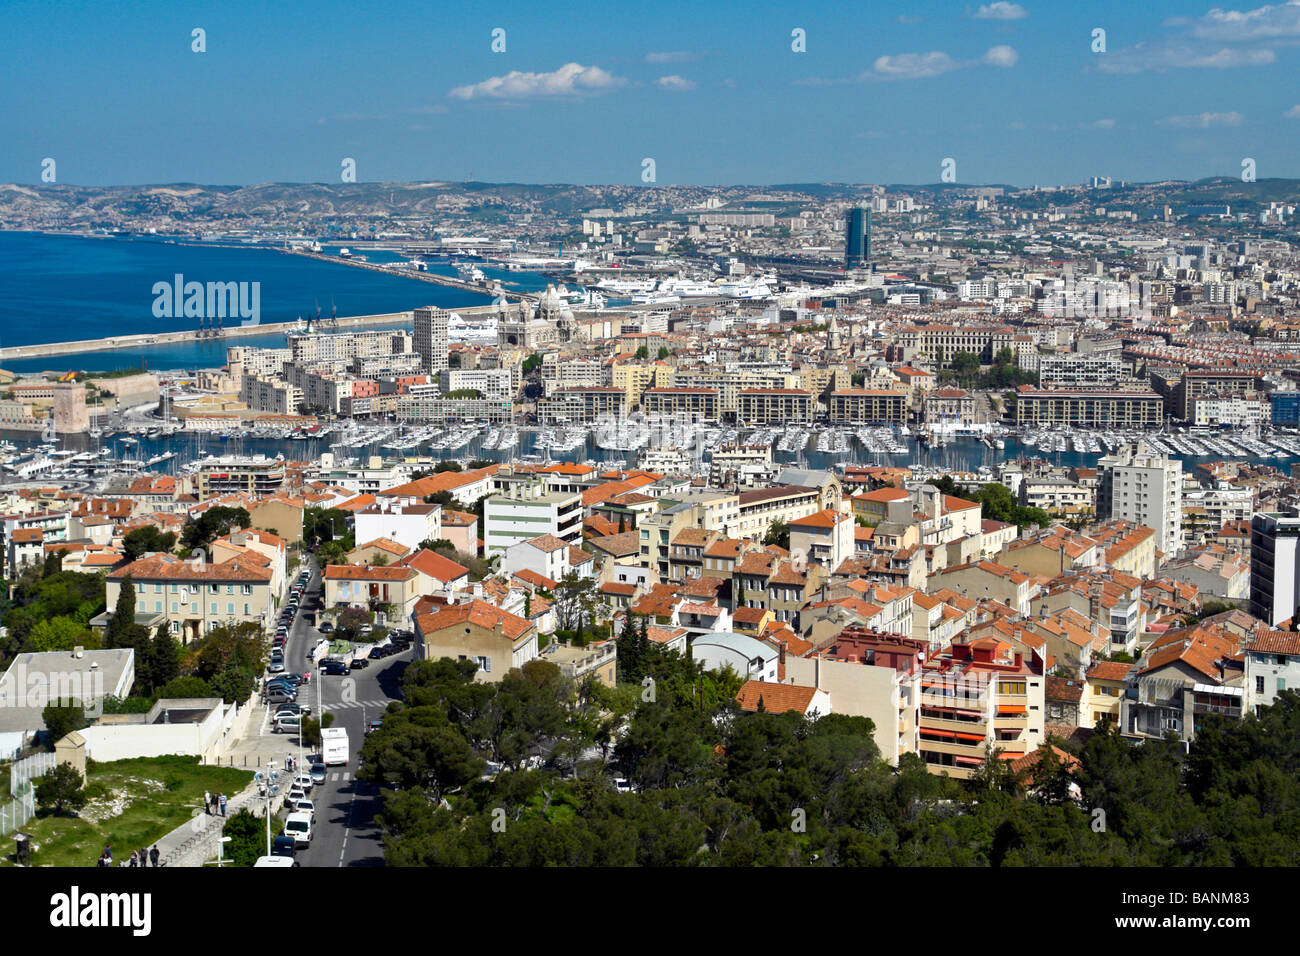 Vista general del centro de Marsella desde el sur hacia el mar, la zona del puerto y el mar Mediterráneo con la Catedral en el centro Foto de stock